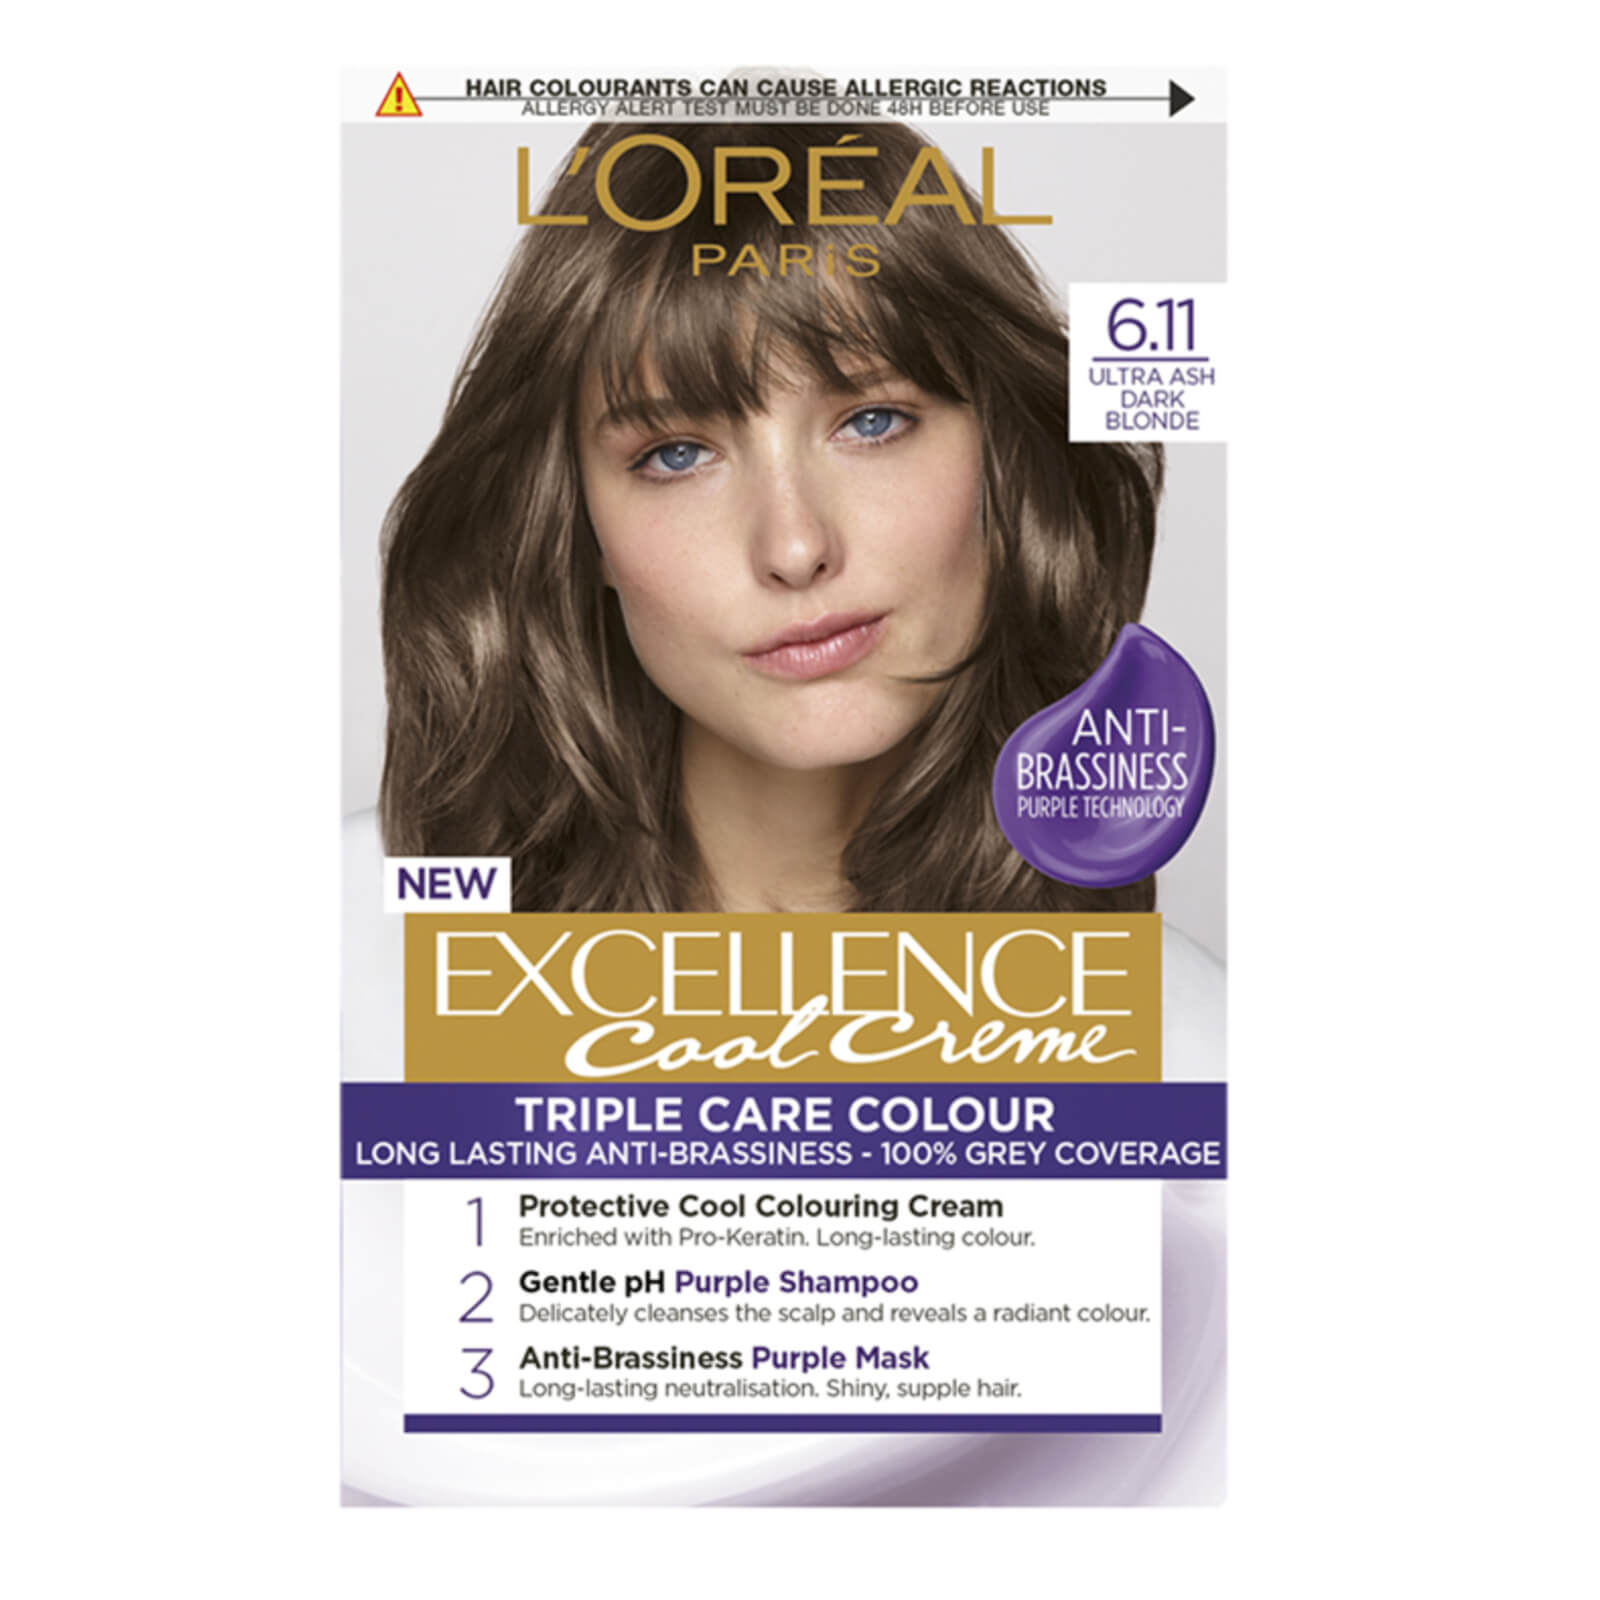 L'Oréal Paris Excellence Crème Permanent Hair Dye (Various Shades) - 6.11 Ultra Ash Dark Blonde